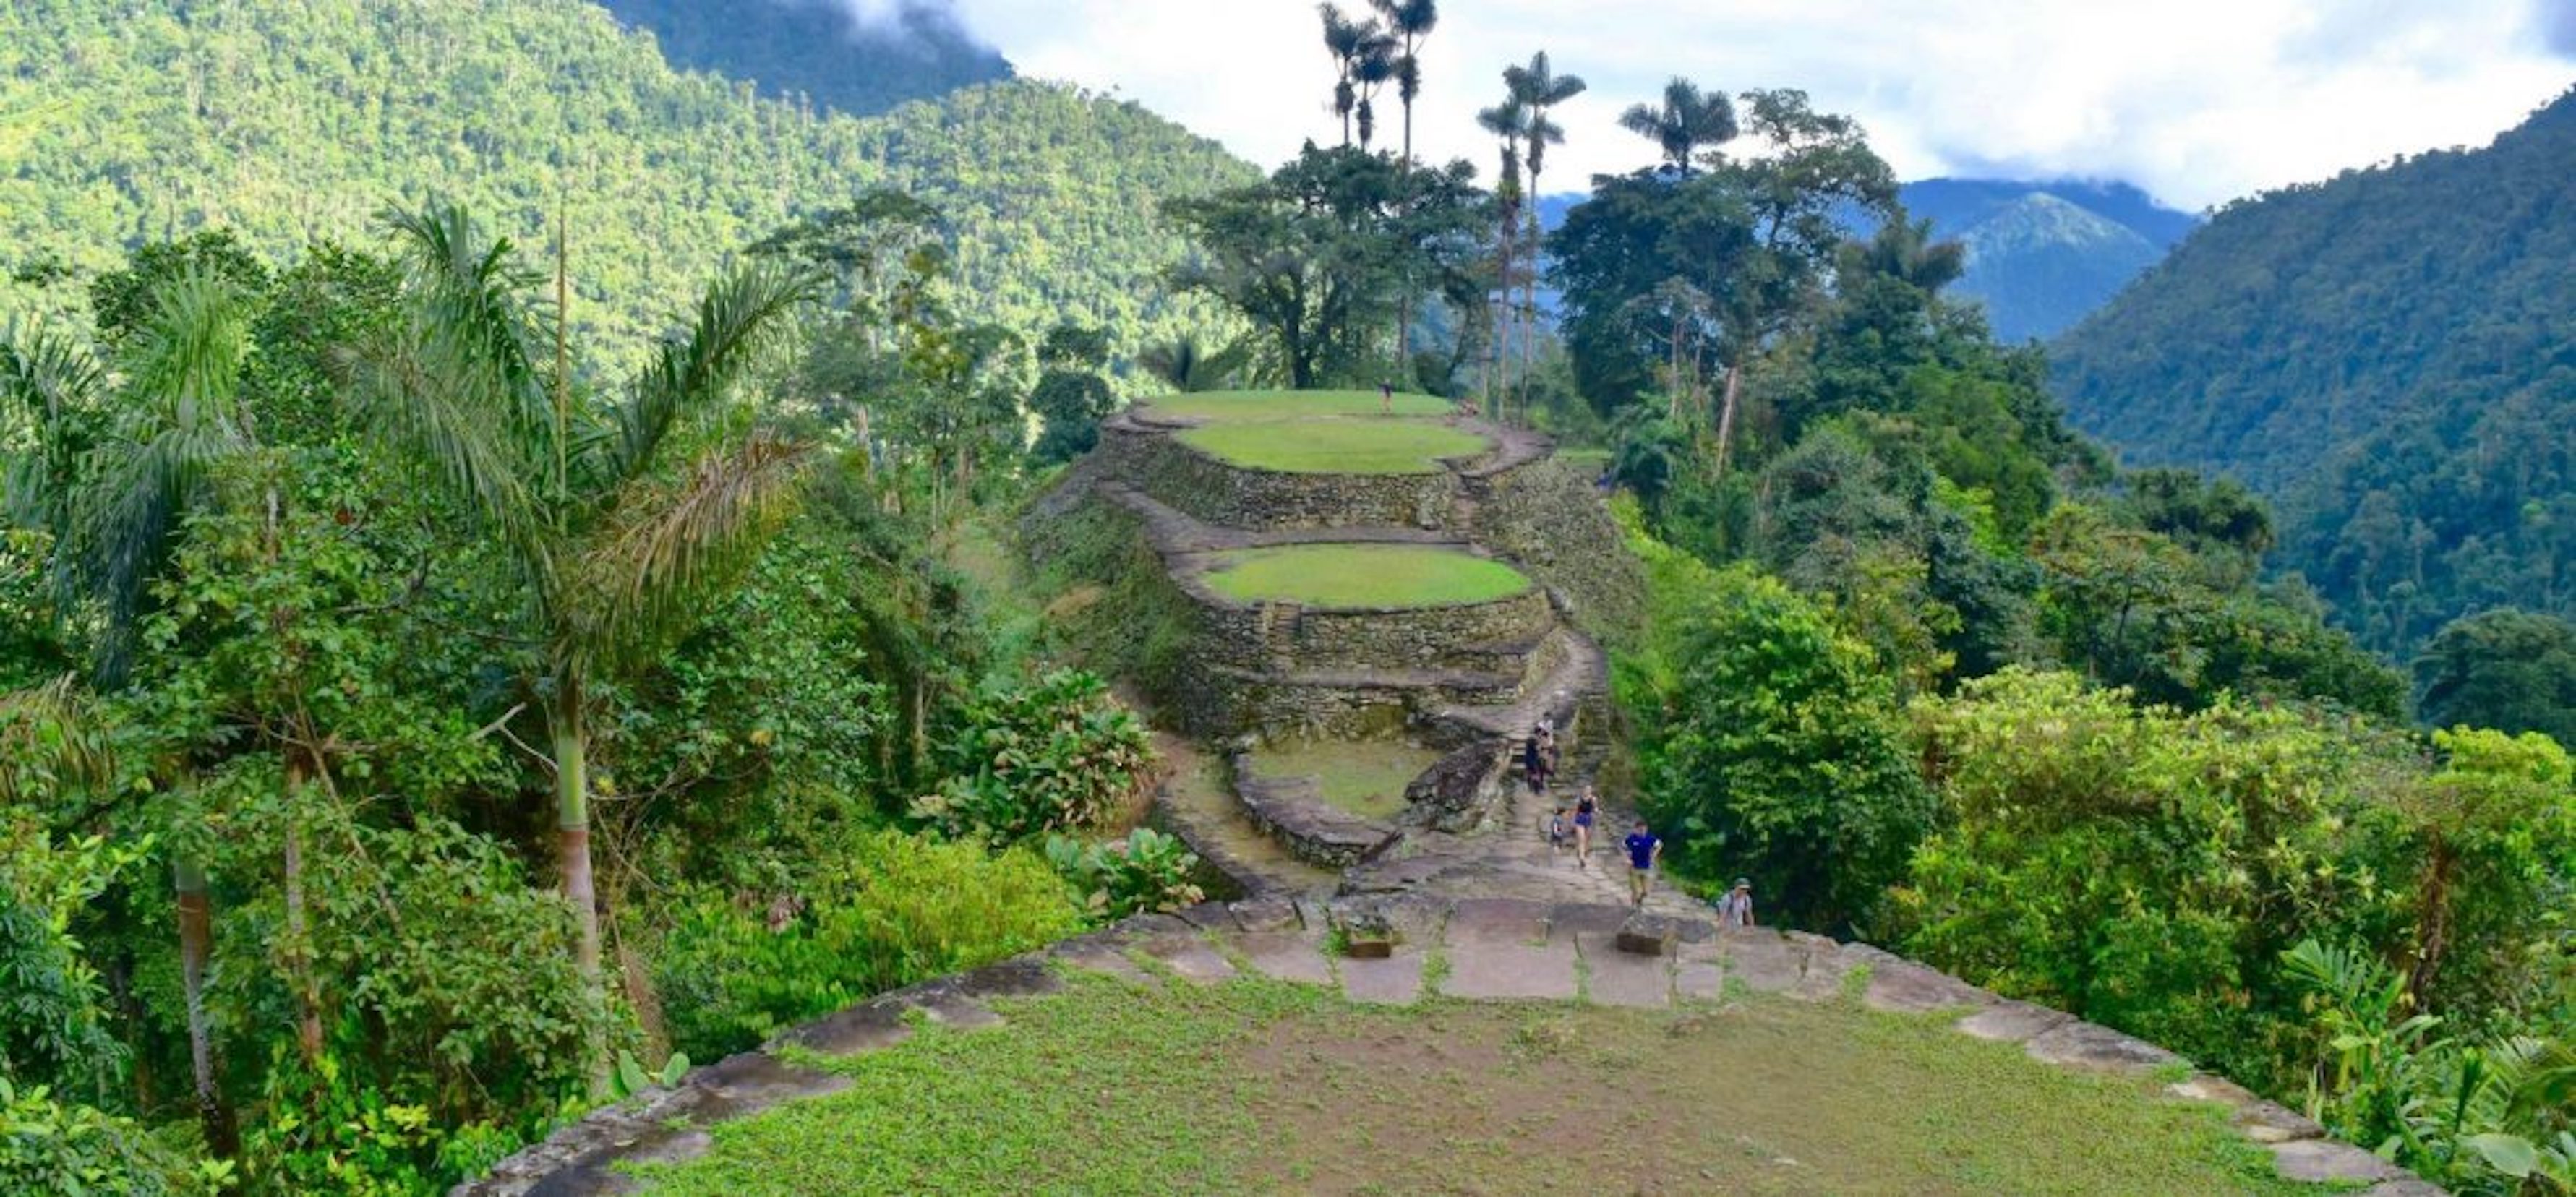 La Ciudad Perdida está escondida en lo profundo de la jungla de Colombia y consta de alrededor de 170 terrazas de piedra excavadas en una montaña, con numerosas plazas y calles conectadas (Oficina de Turismo de la Ciudad Perdida)